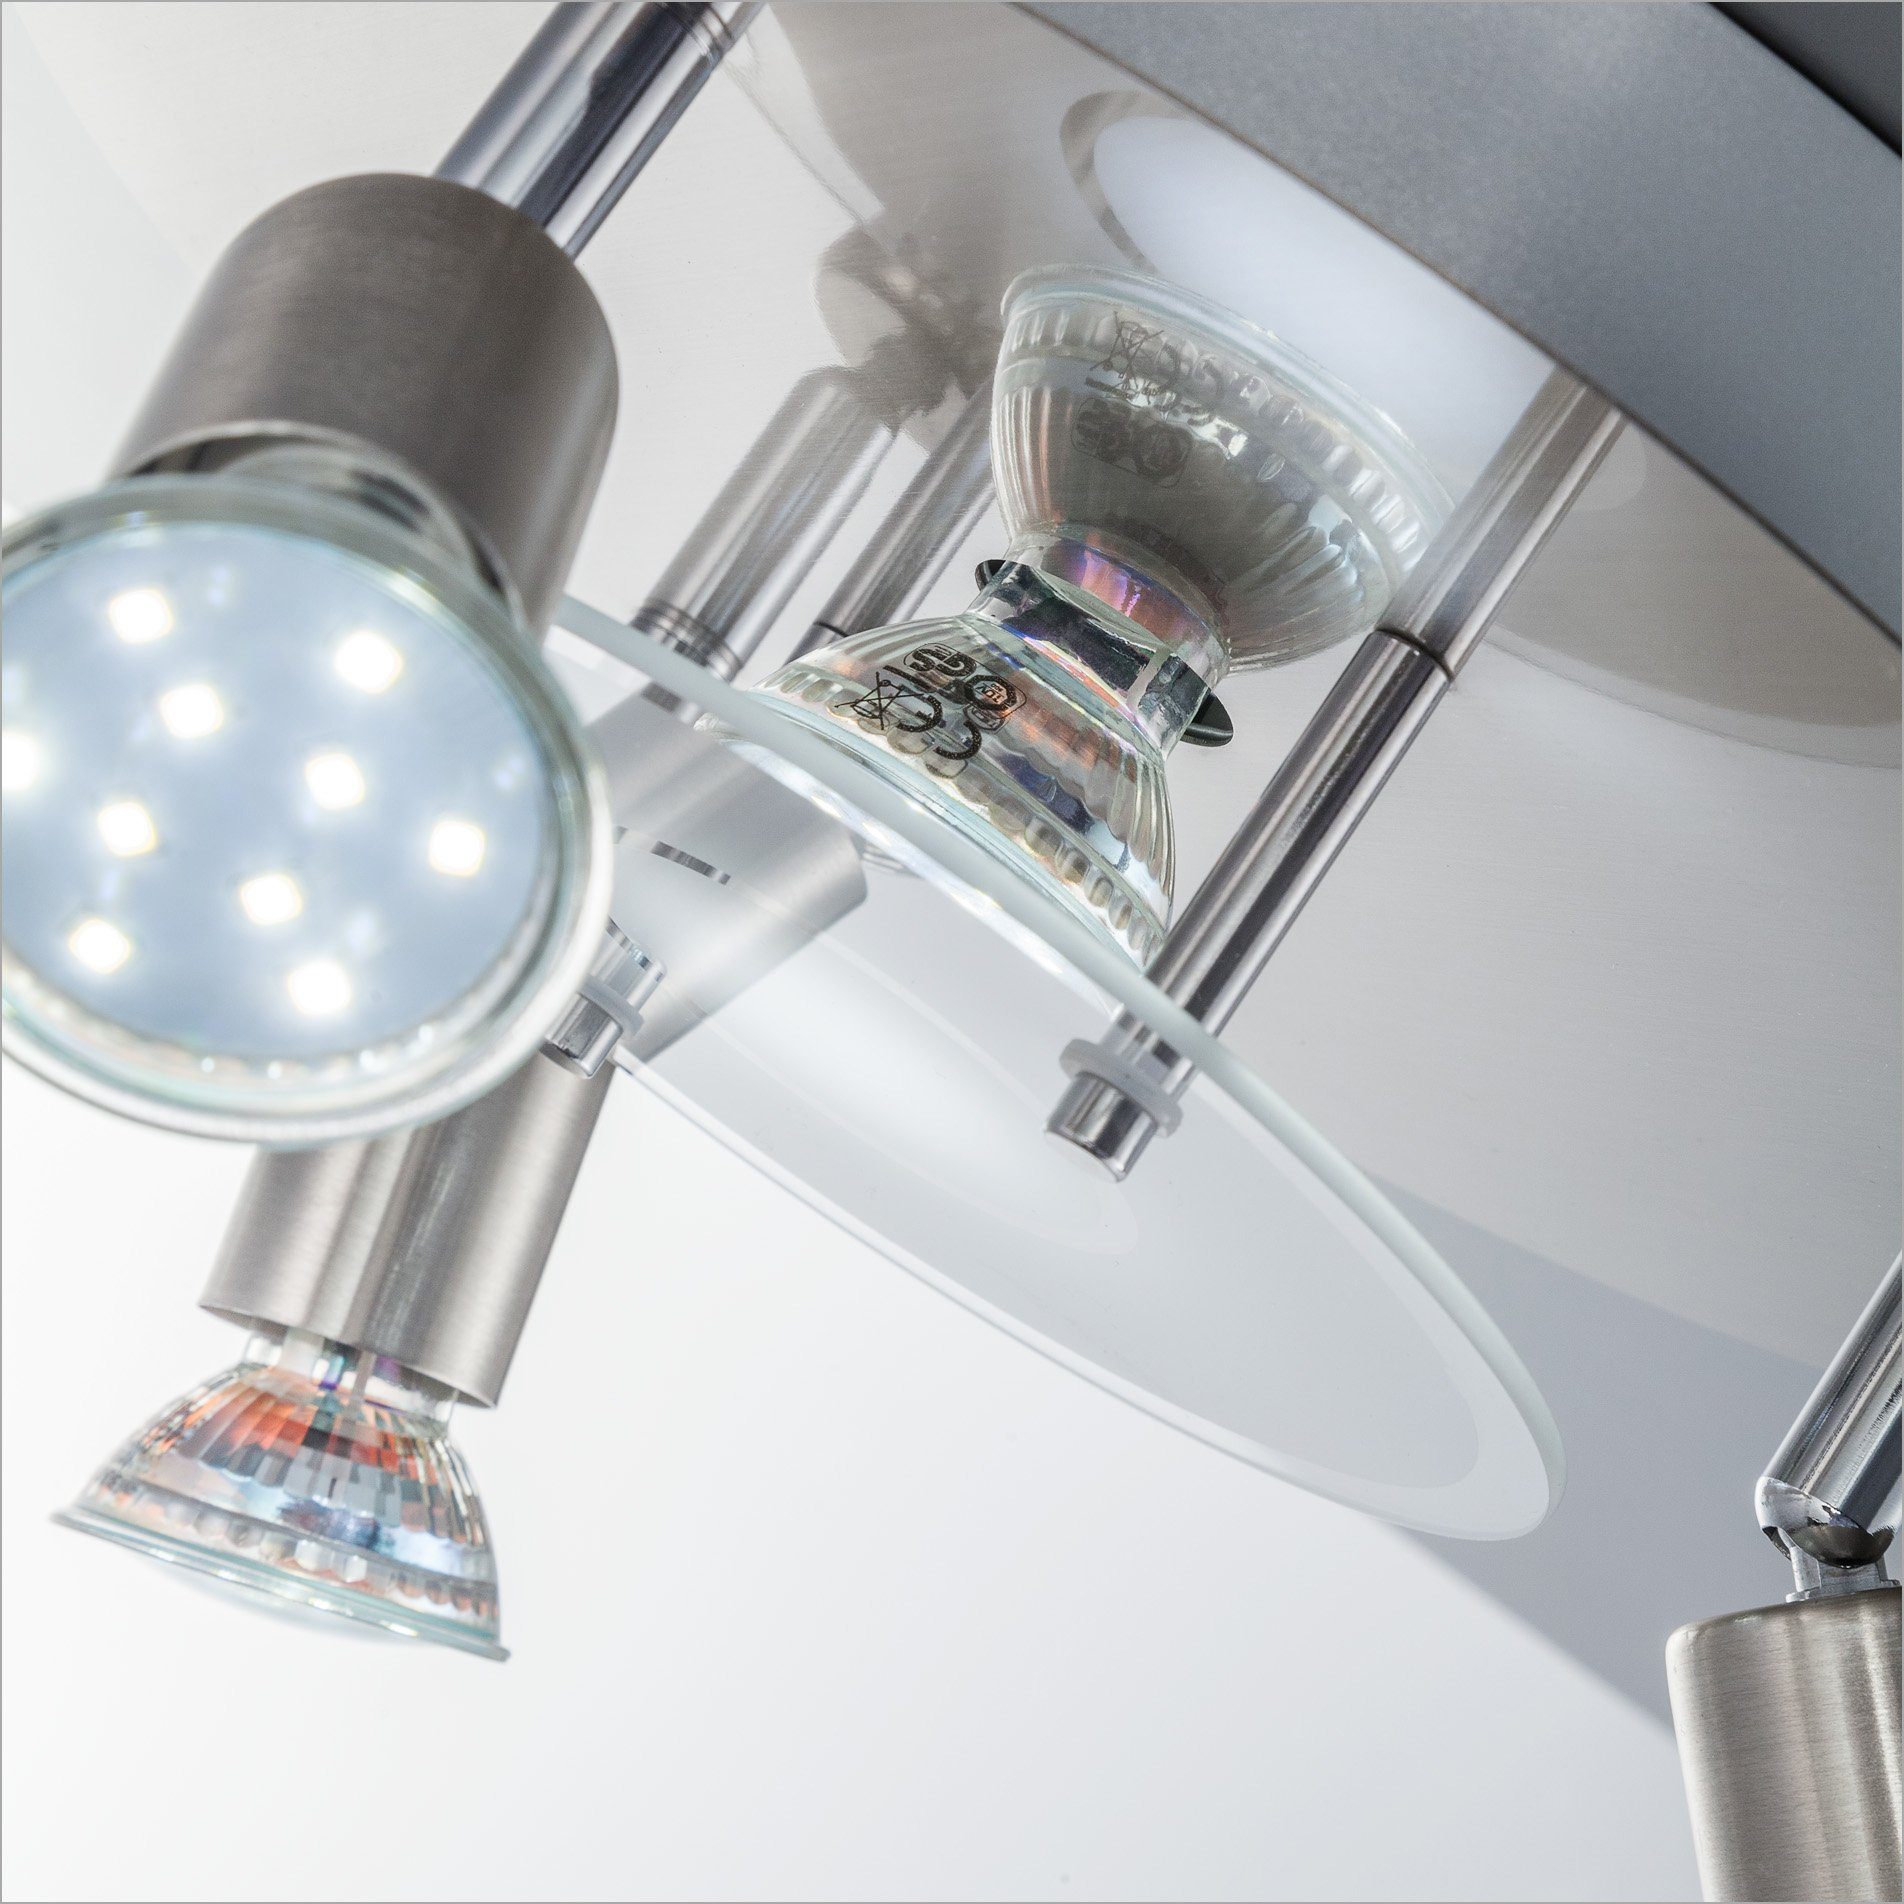 LED LED Leuchtmittel Glas, Metall, inkl. 3W 250lm Warmweiß, B.K.Licht Strahler, GU10, Deckenstrahler, Deckenleuchte, rund, wechselbar,